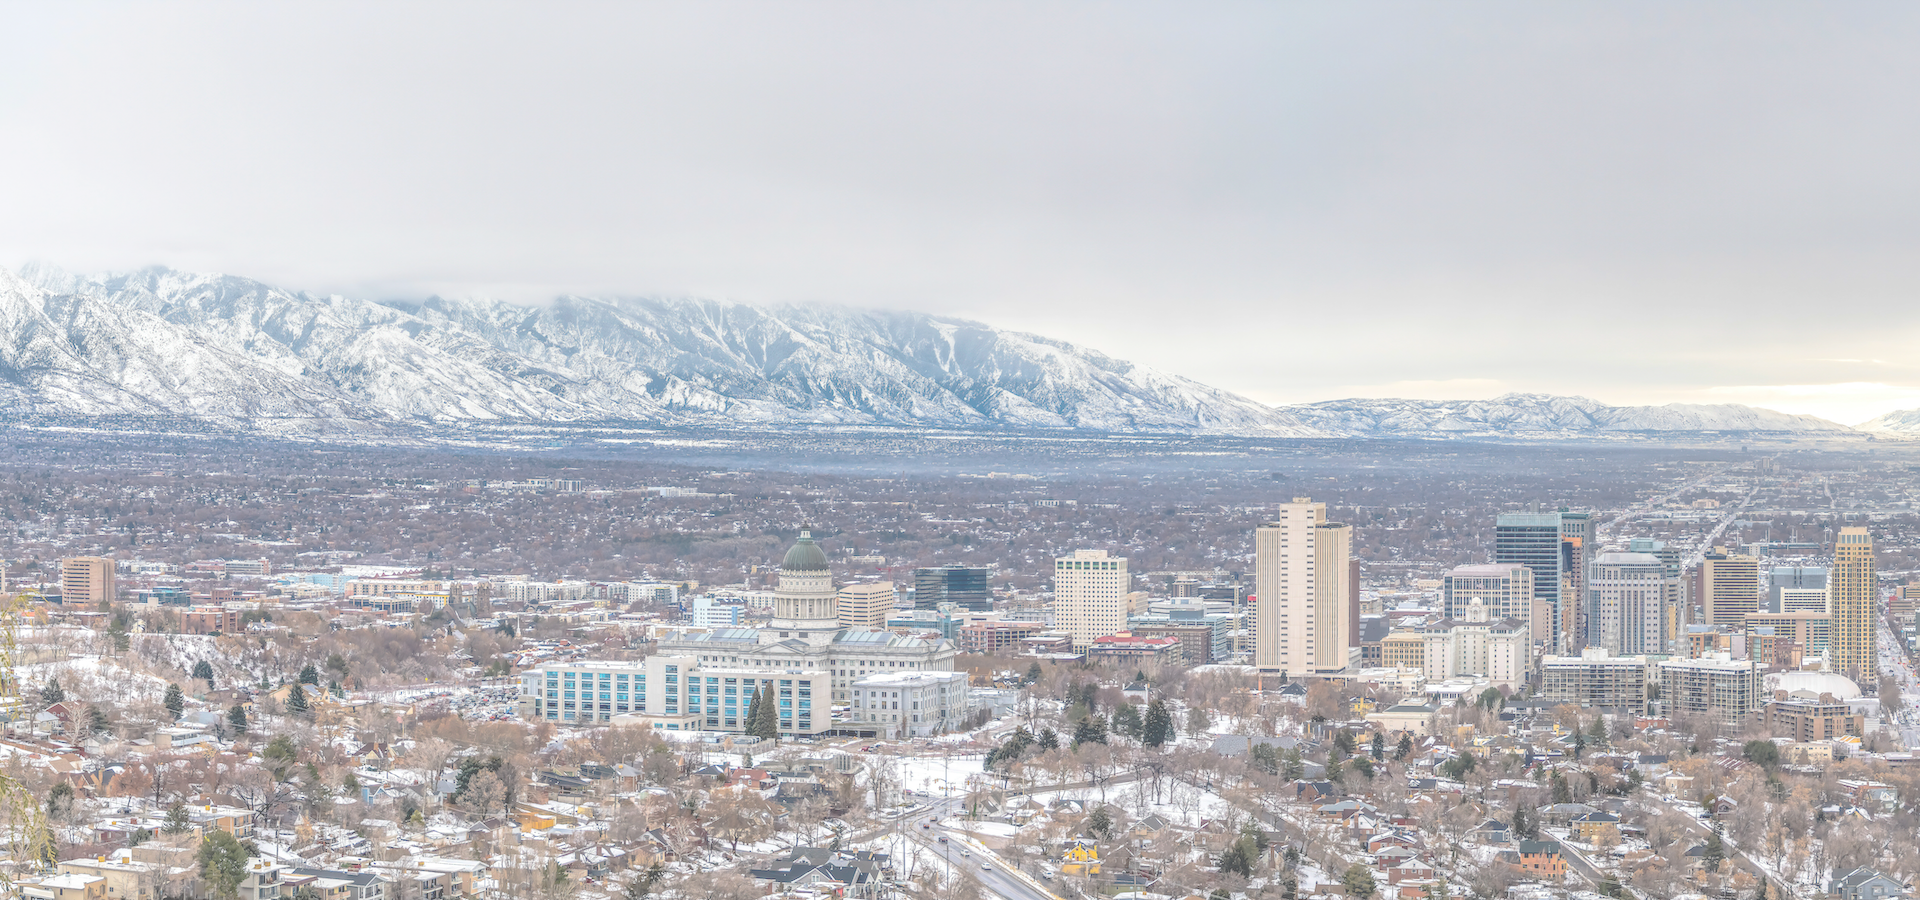 <b>Salt Lake City, Utah, United States</b>